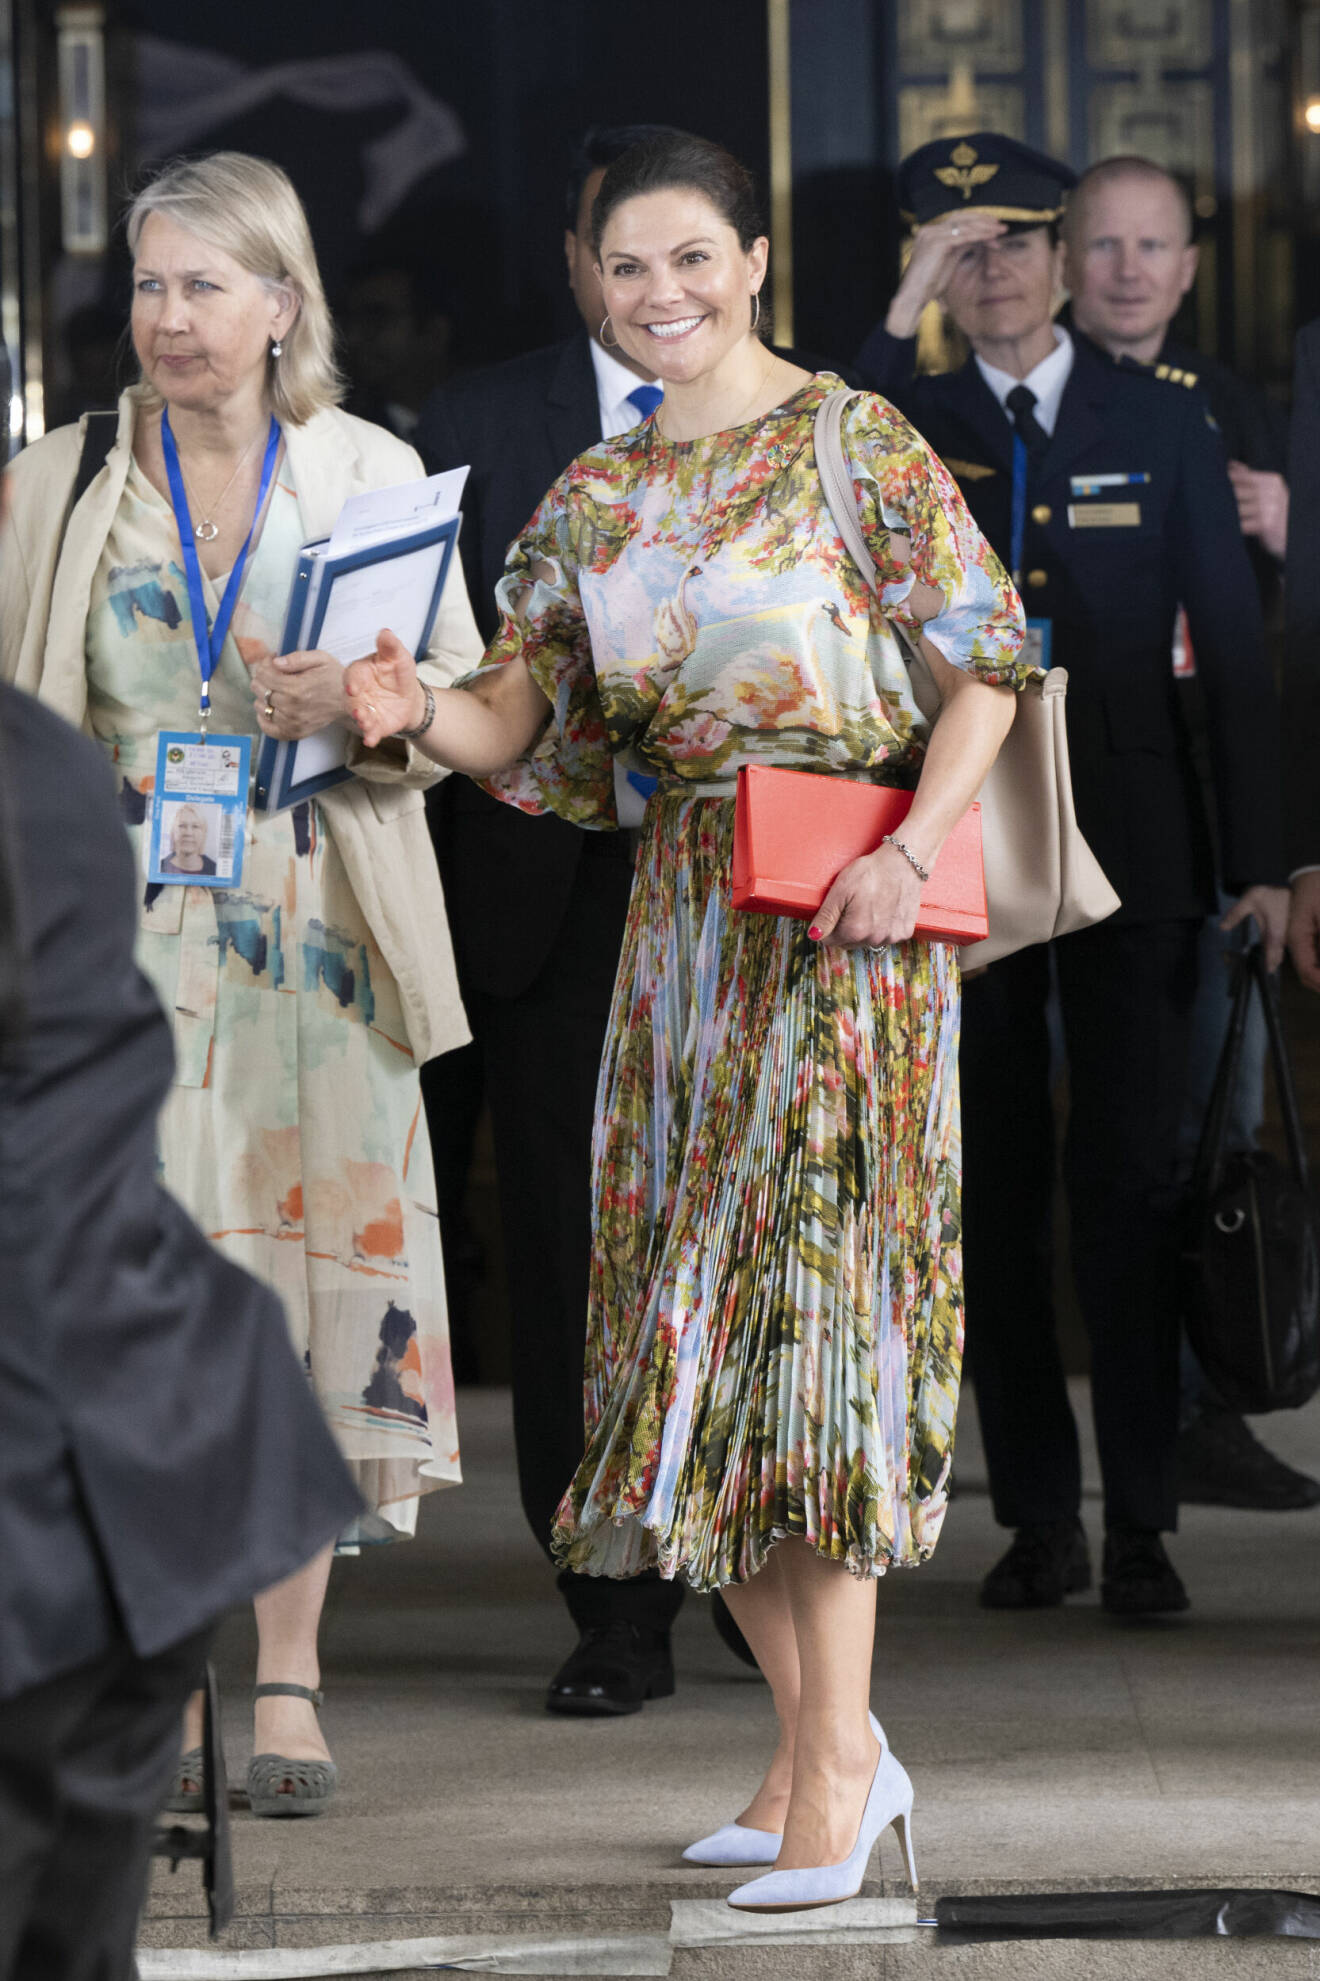 Kronprinsessan Victoria i Dhaka i Bangladesh, bär klänning från Jennifer Blom